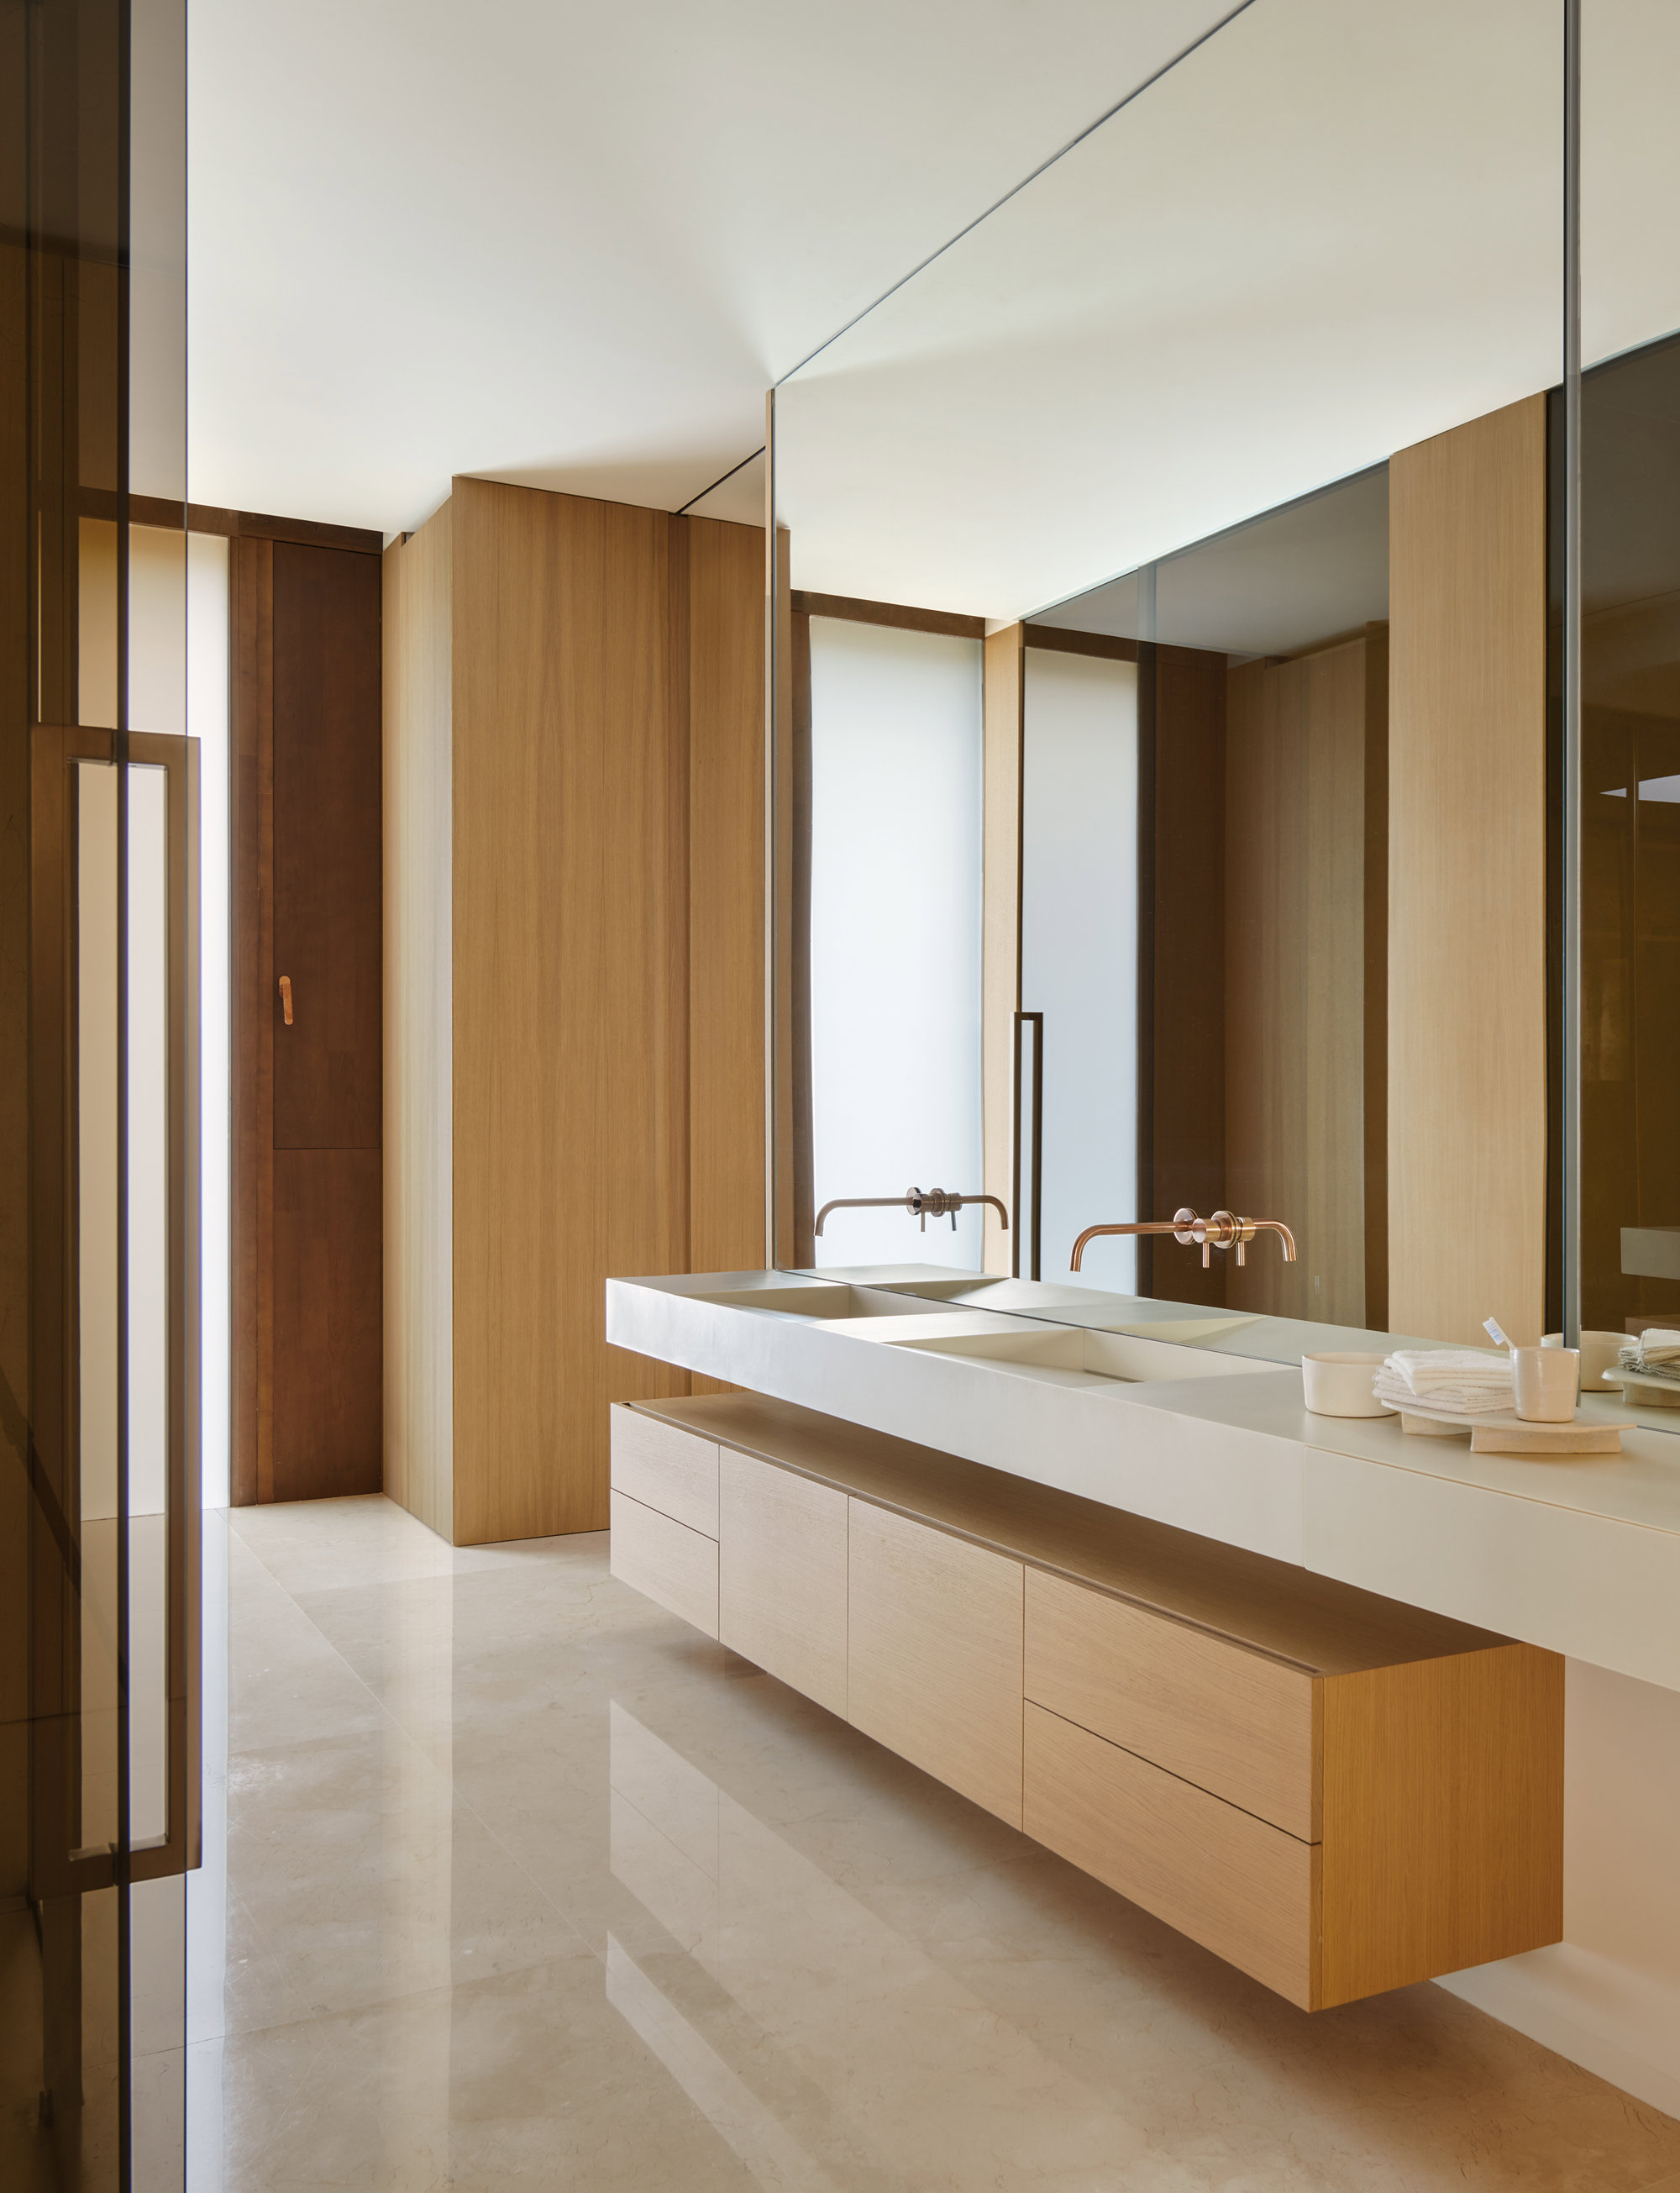 baño de la suite en color crema y muebles de madera a medida 